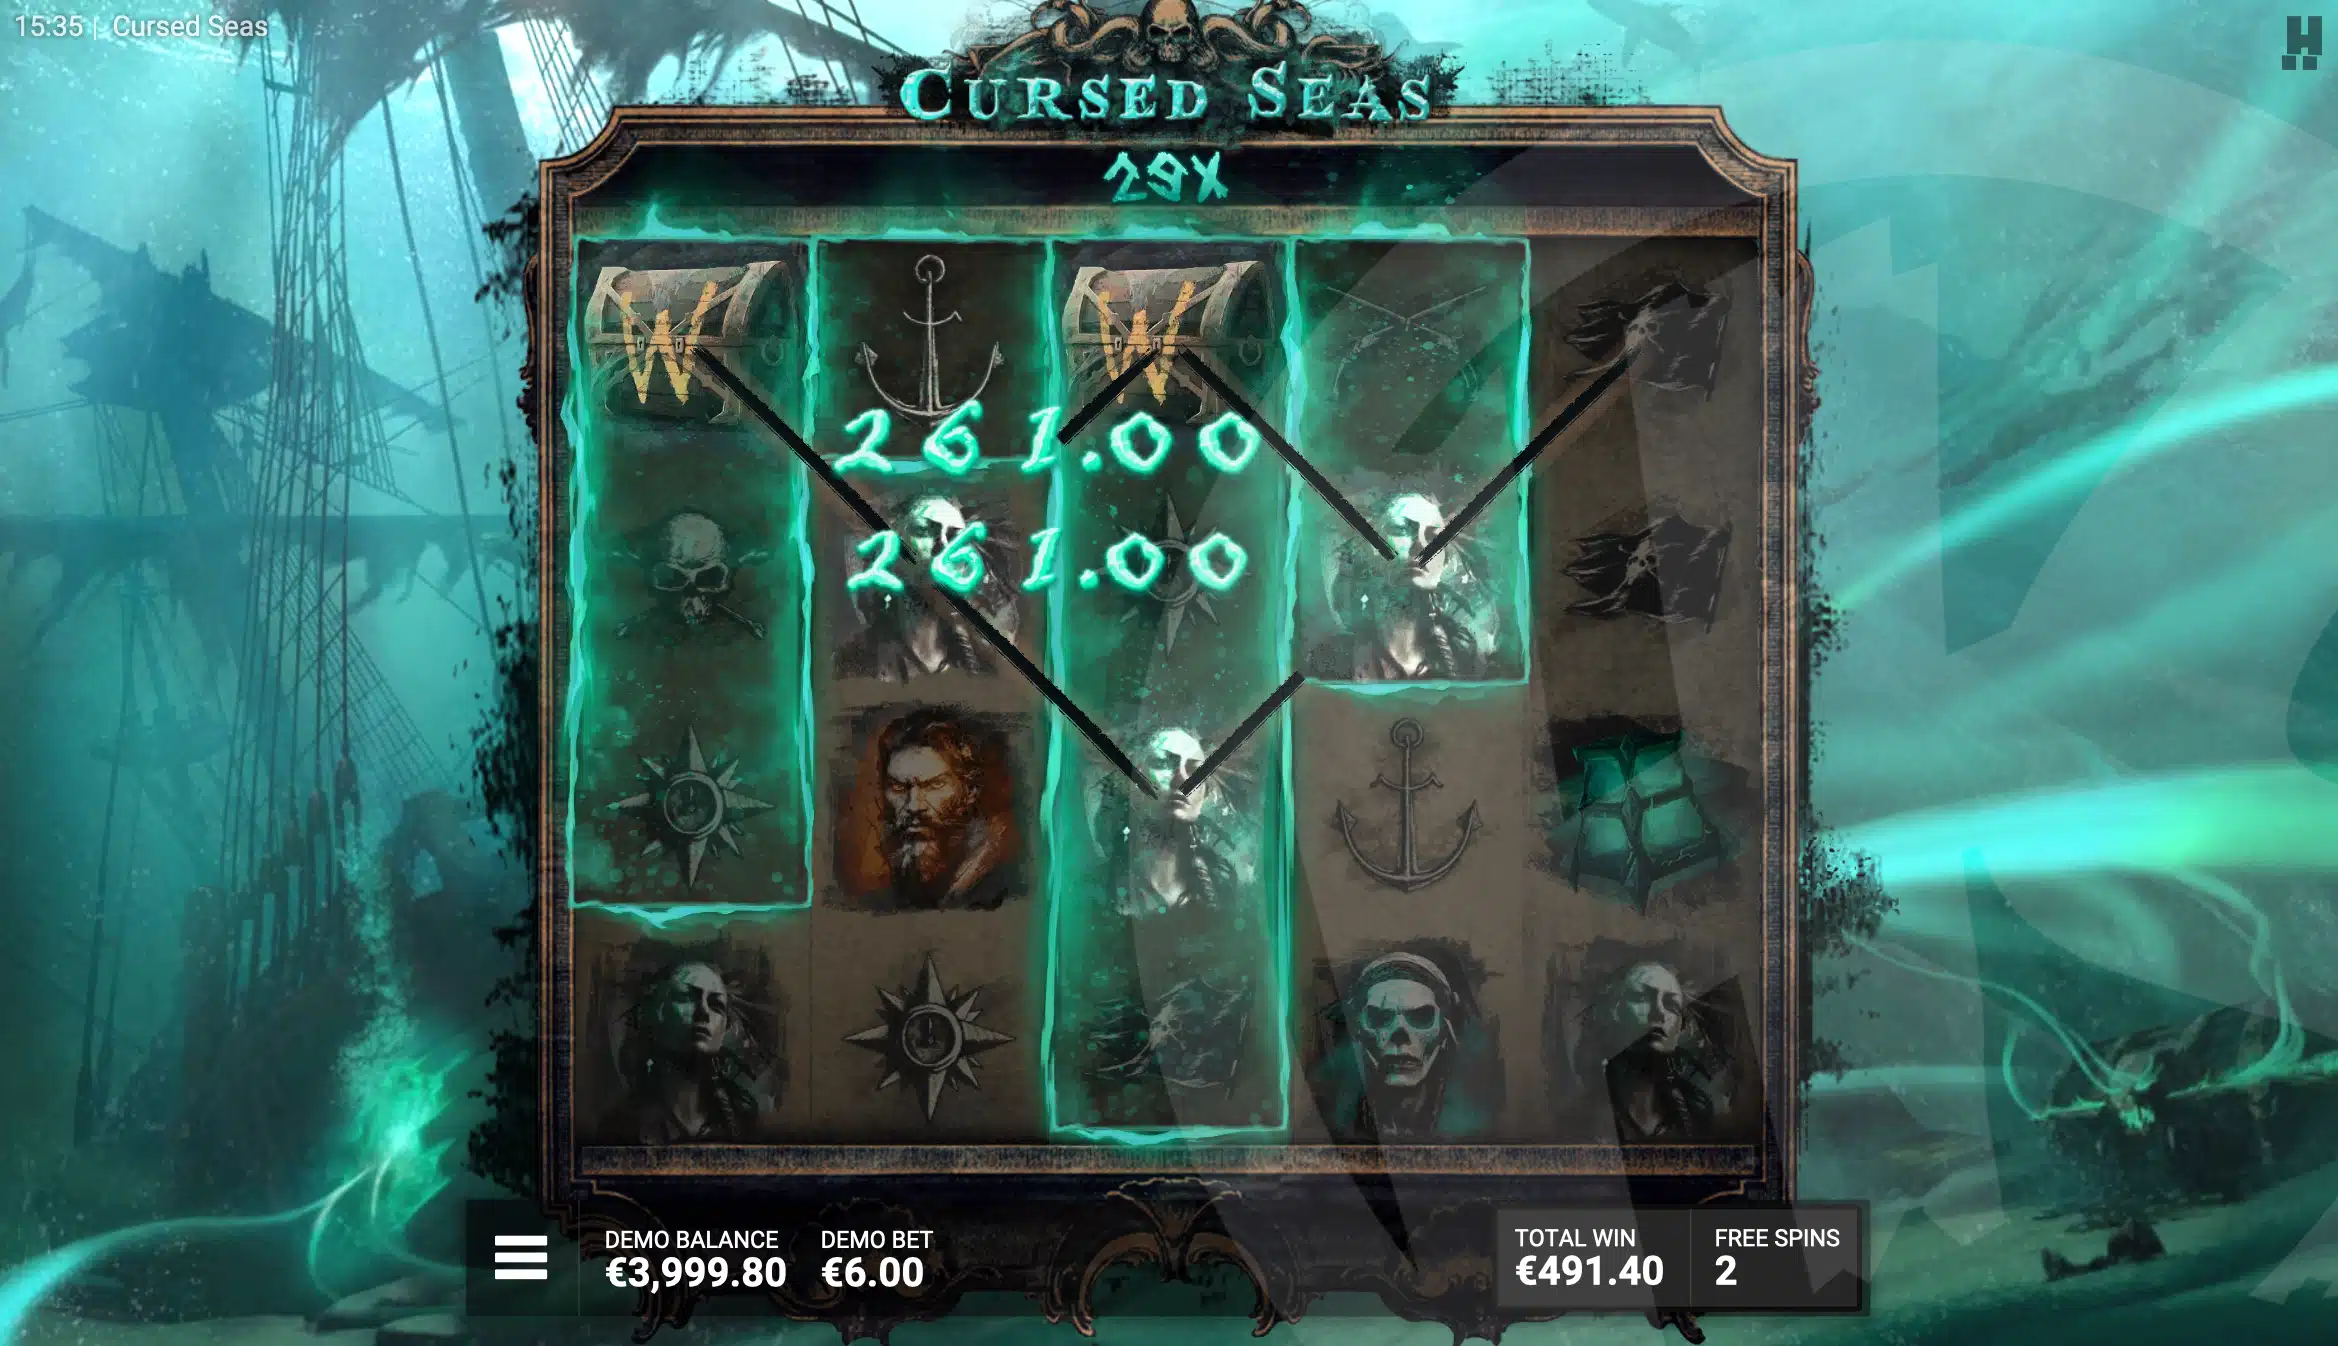 Cursed Areas Persist During the Sunken Treasure Bonus Game